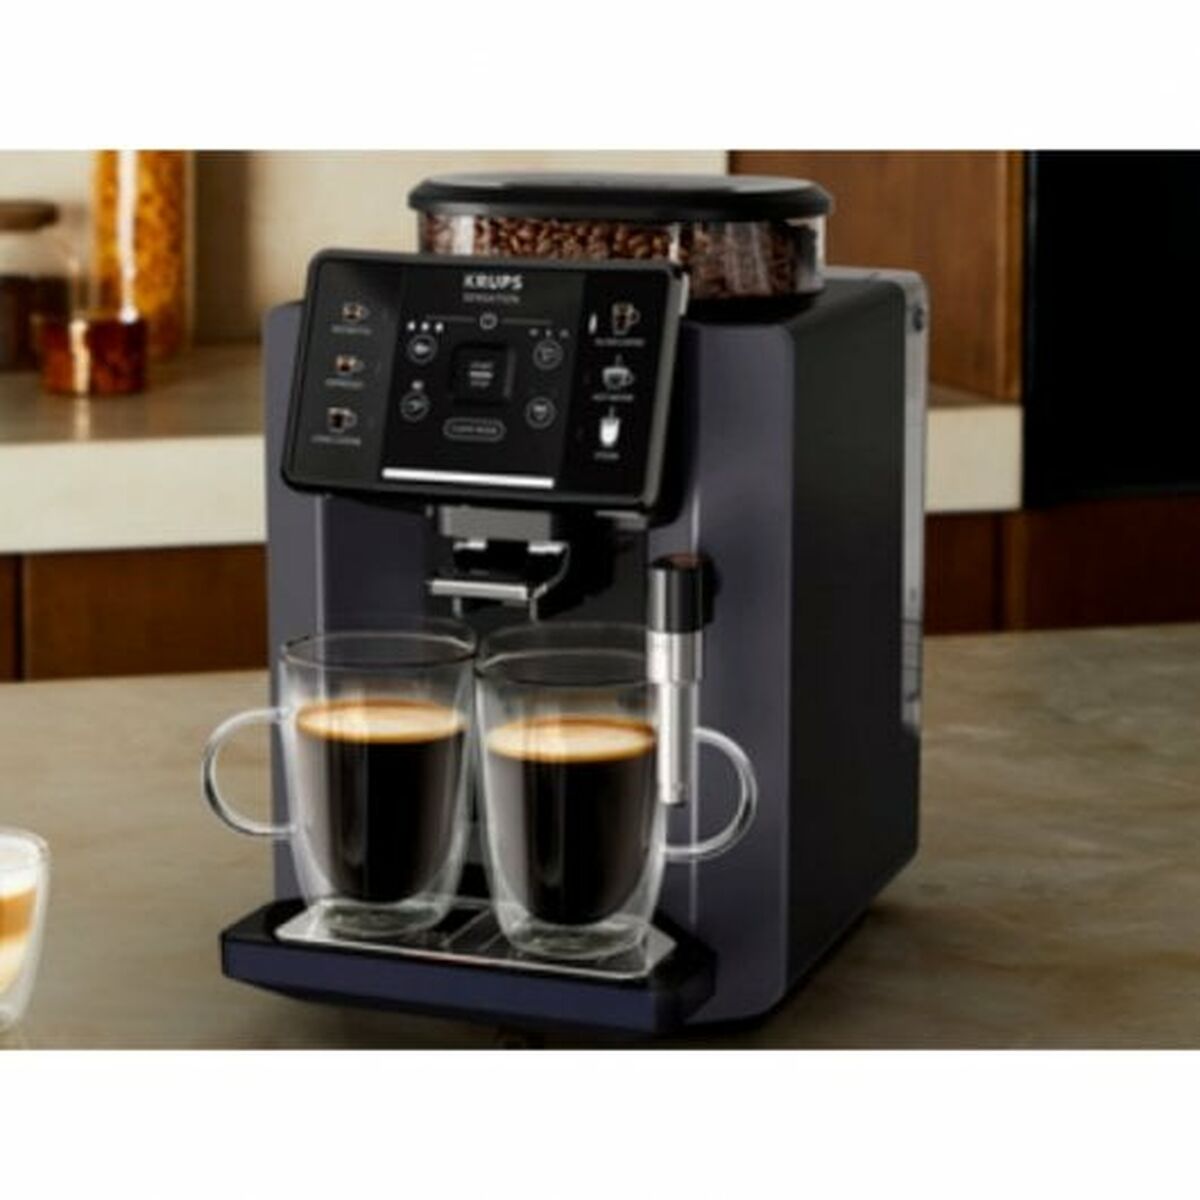 Superautomatische Kaffeemaschine Krups Sensation C50 15 bar Schwarz 1450 W - CA International 